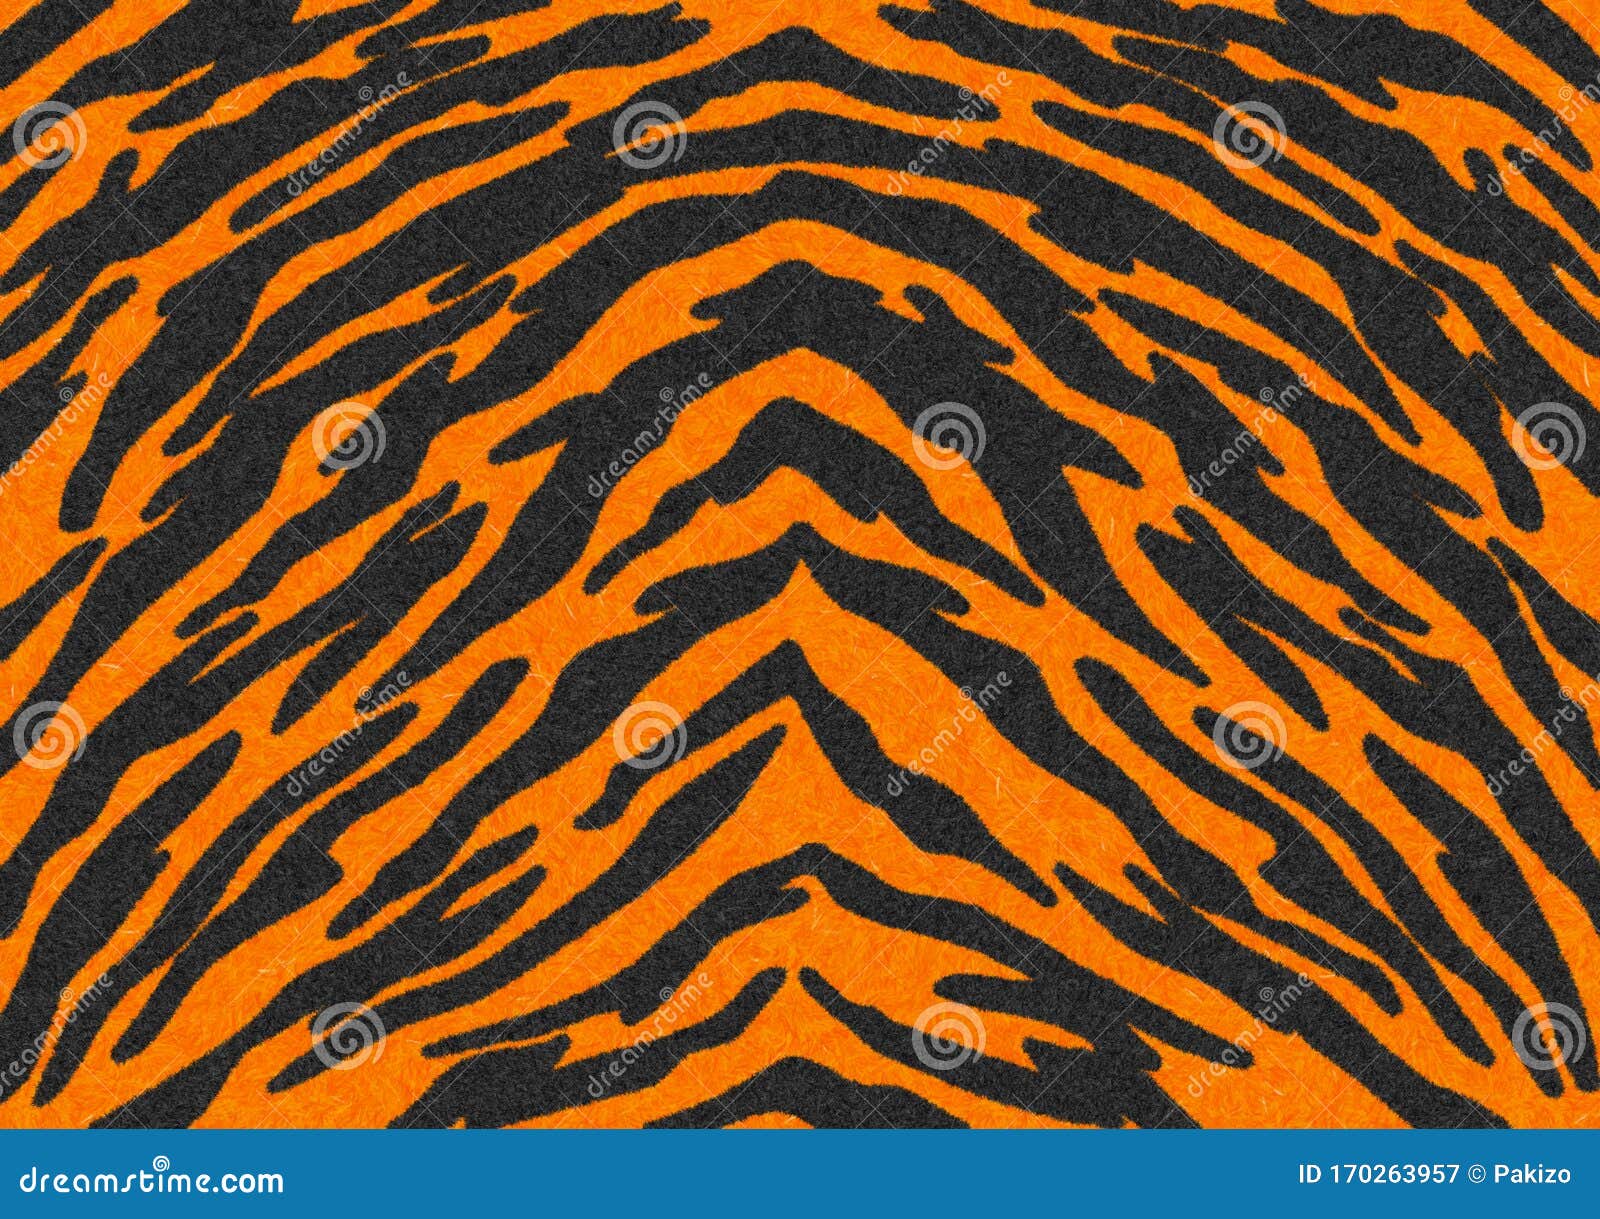 The Black-Orange Tiger Stripes Fur Texture, Carpet Animal Skin Background,  Black and Orange Theme Color, Look Smooth, Fluffy. Stock Illustration -  Illustration of coat, blackorange: 170263957